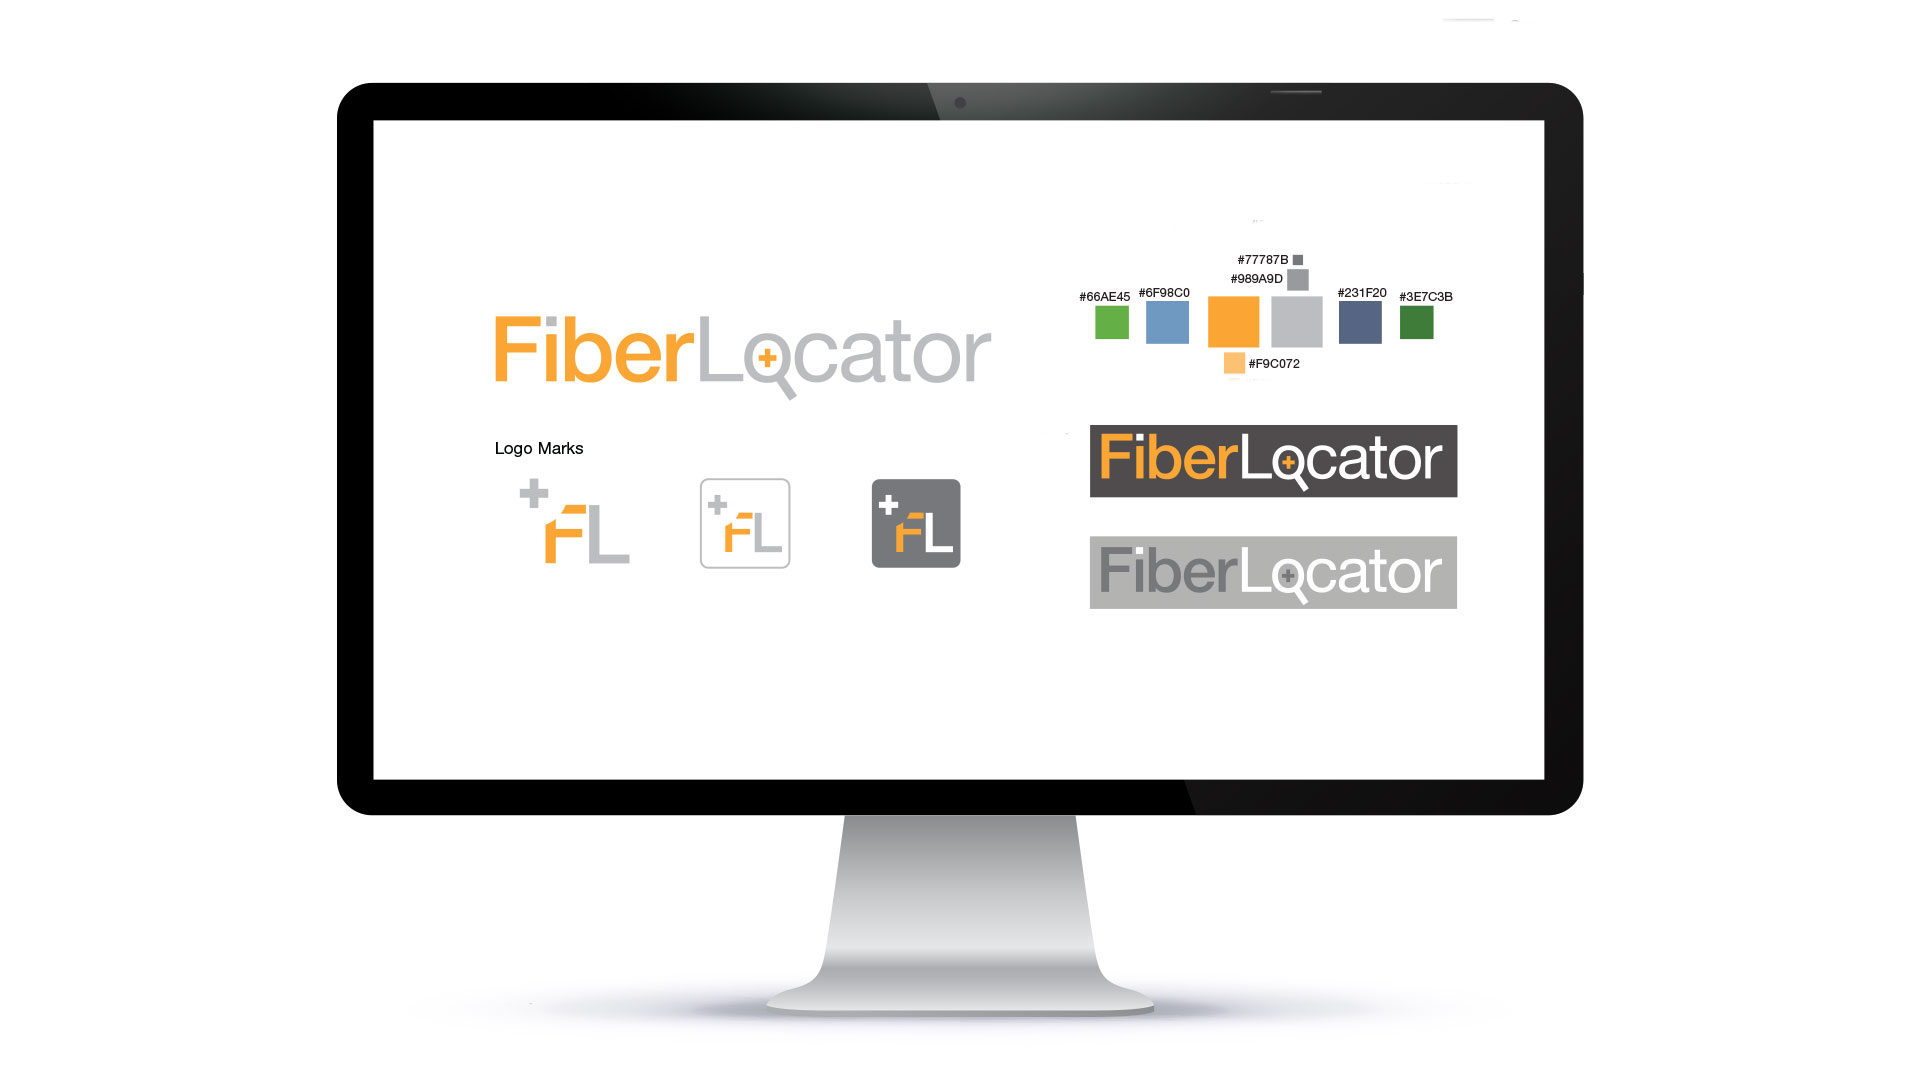 fiberlocator brand guide - access marketing company